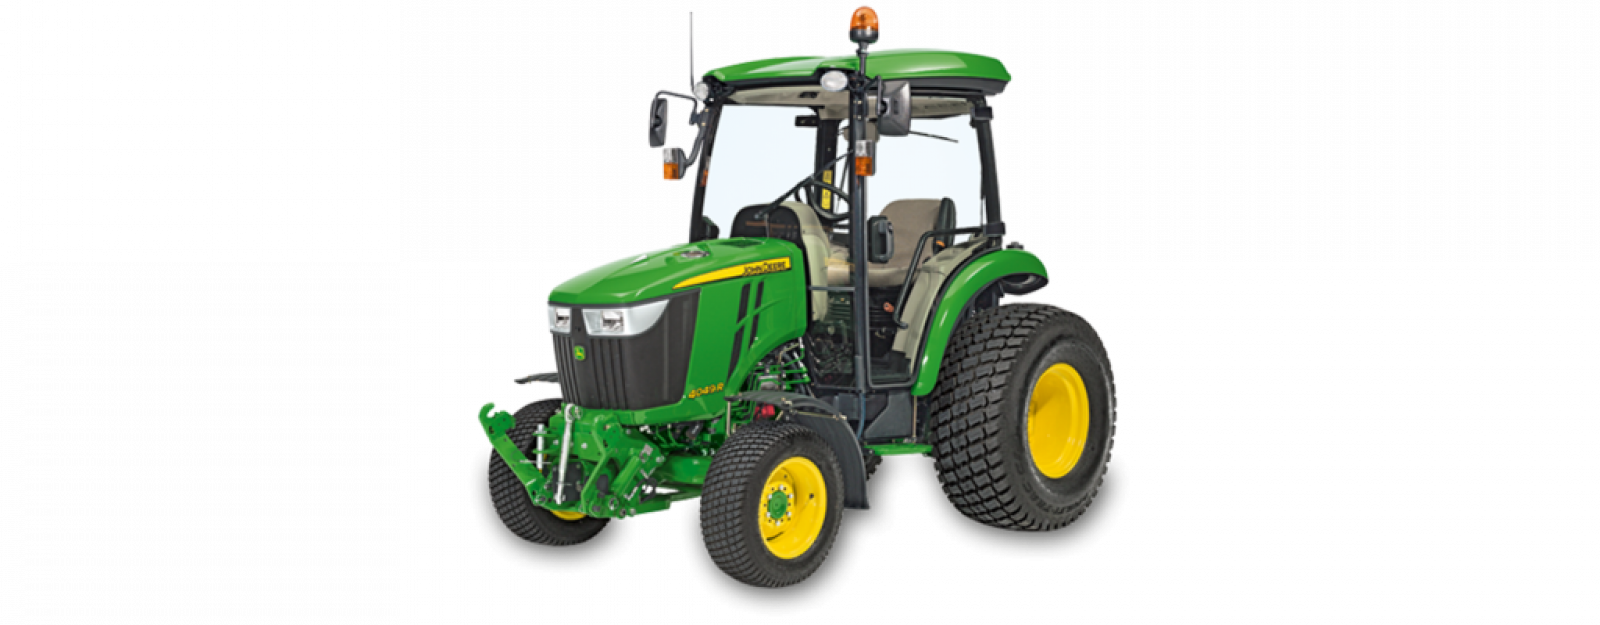 John Deere 4066R Compact Tractor